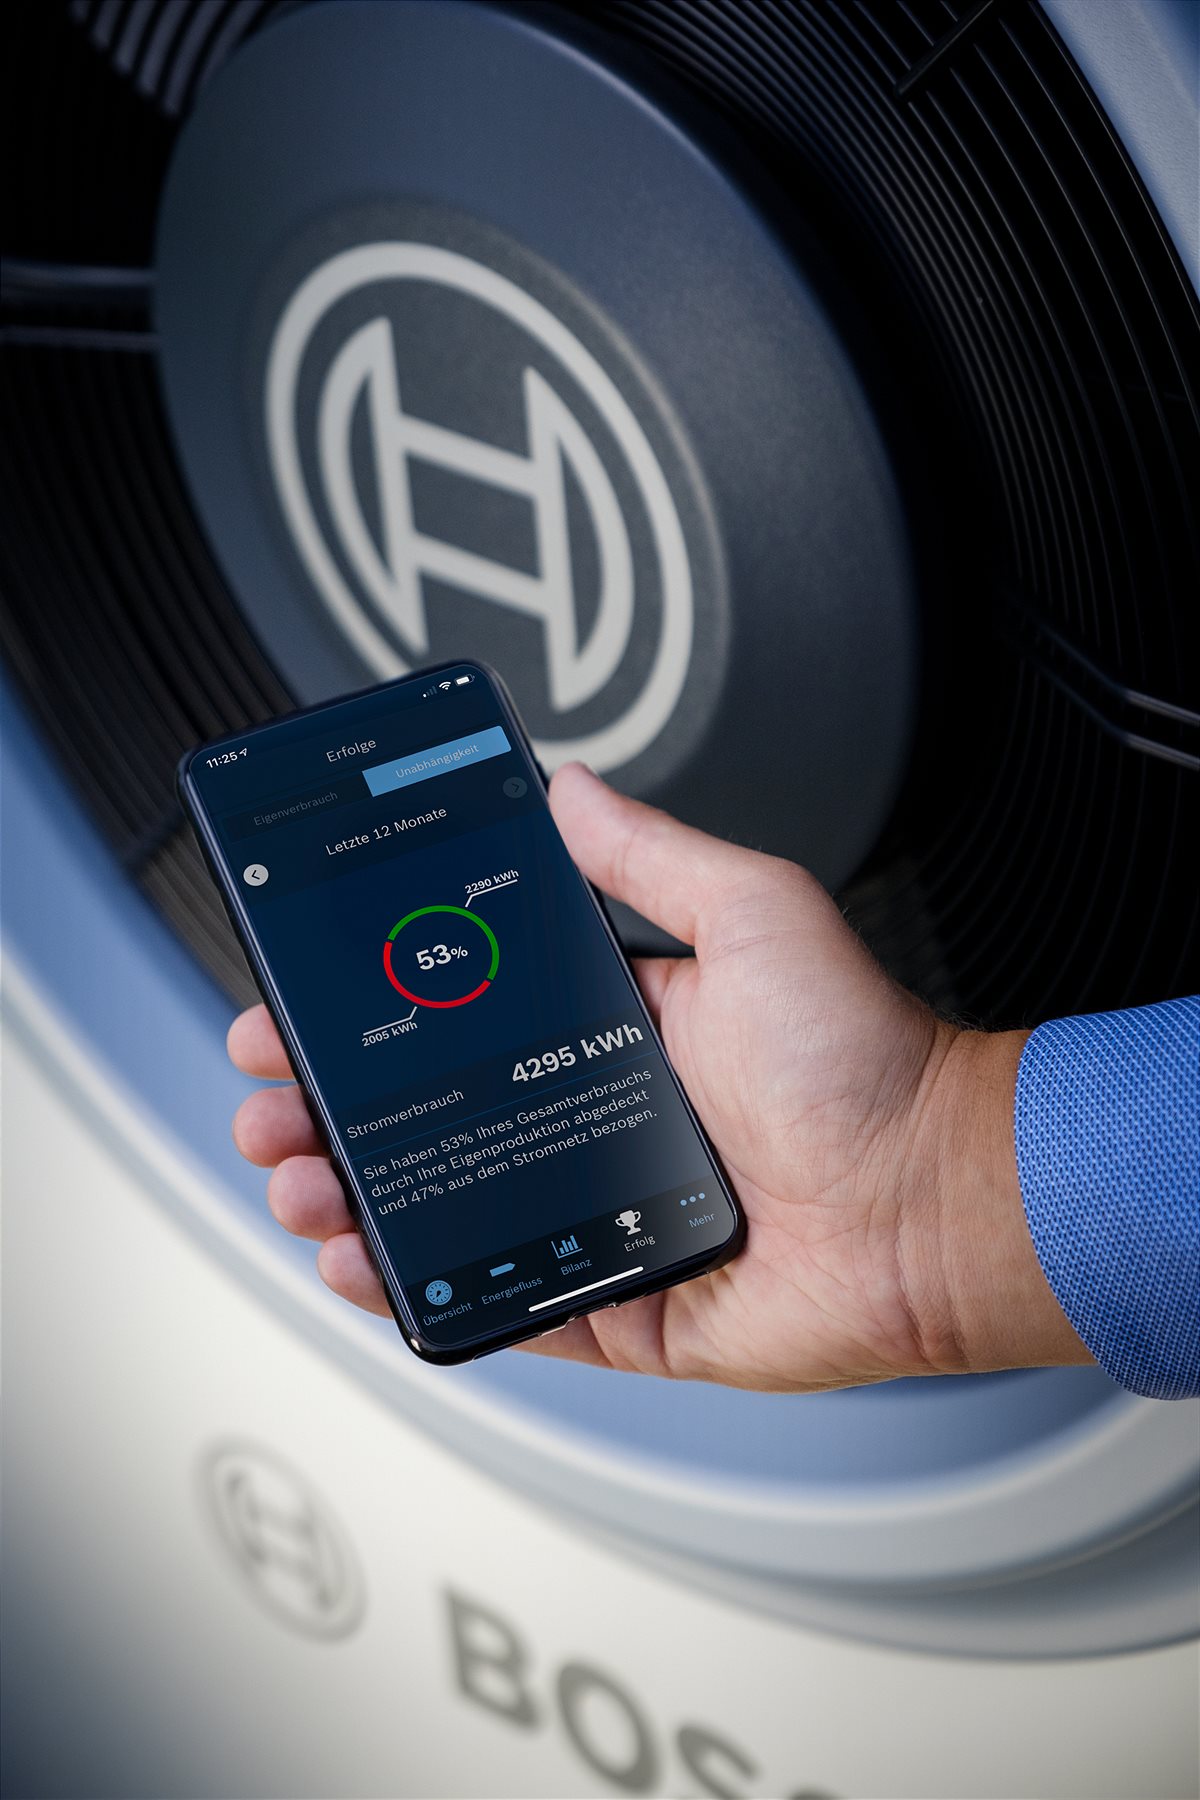 Einfach smart: Der Energiemanager lässt sich in wenigen Schritten in die Bosch Smart Home App integrieren und ist dank seiner intuitiven Benutzeroberfläche auch noch einfach zu bedienen. So hat man alle Energieflüsse im Haus schnell im Blick. 